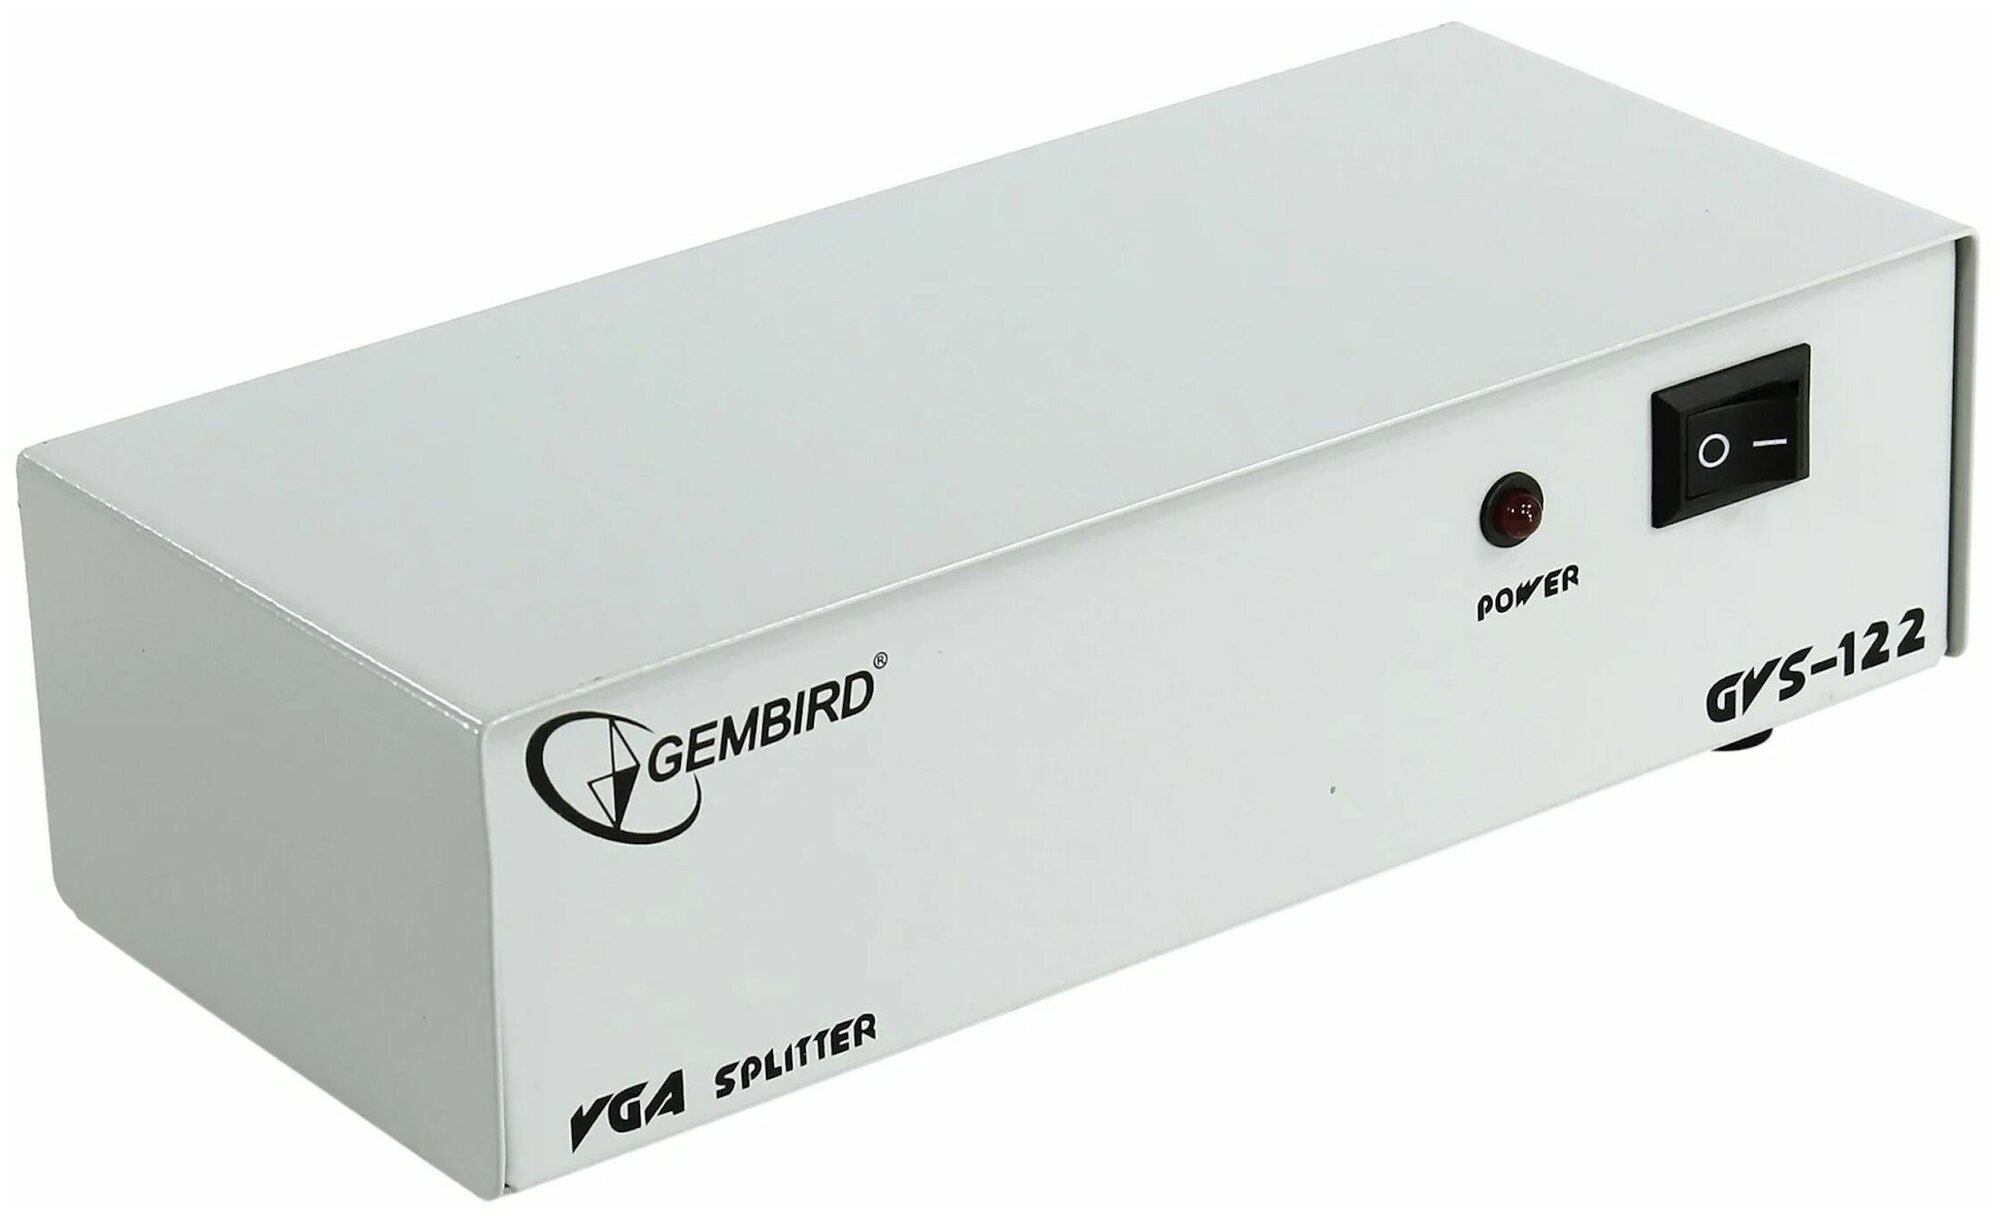 Разветвитель VGA на 8 портов Gembirg GVS128 HD15F/8*15F 1 компьютер - 8 мониторов